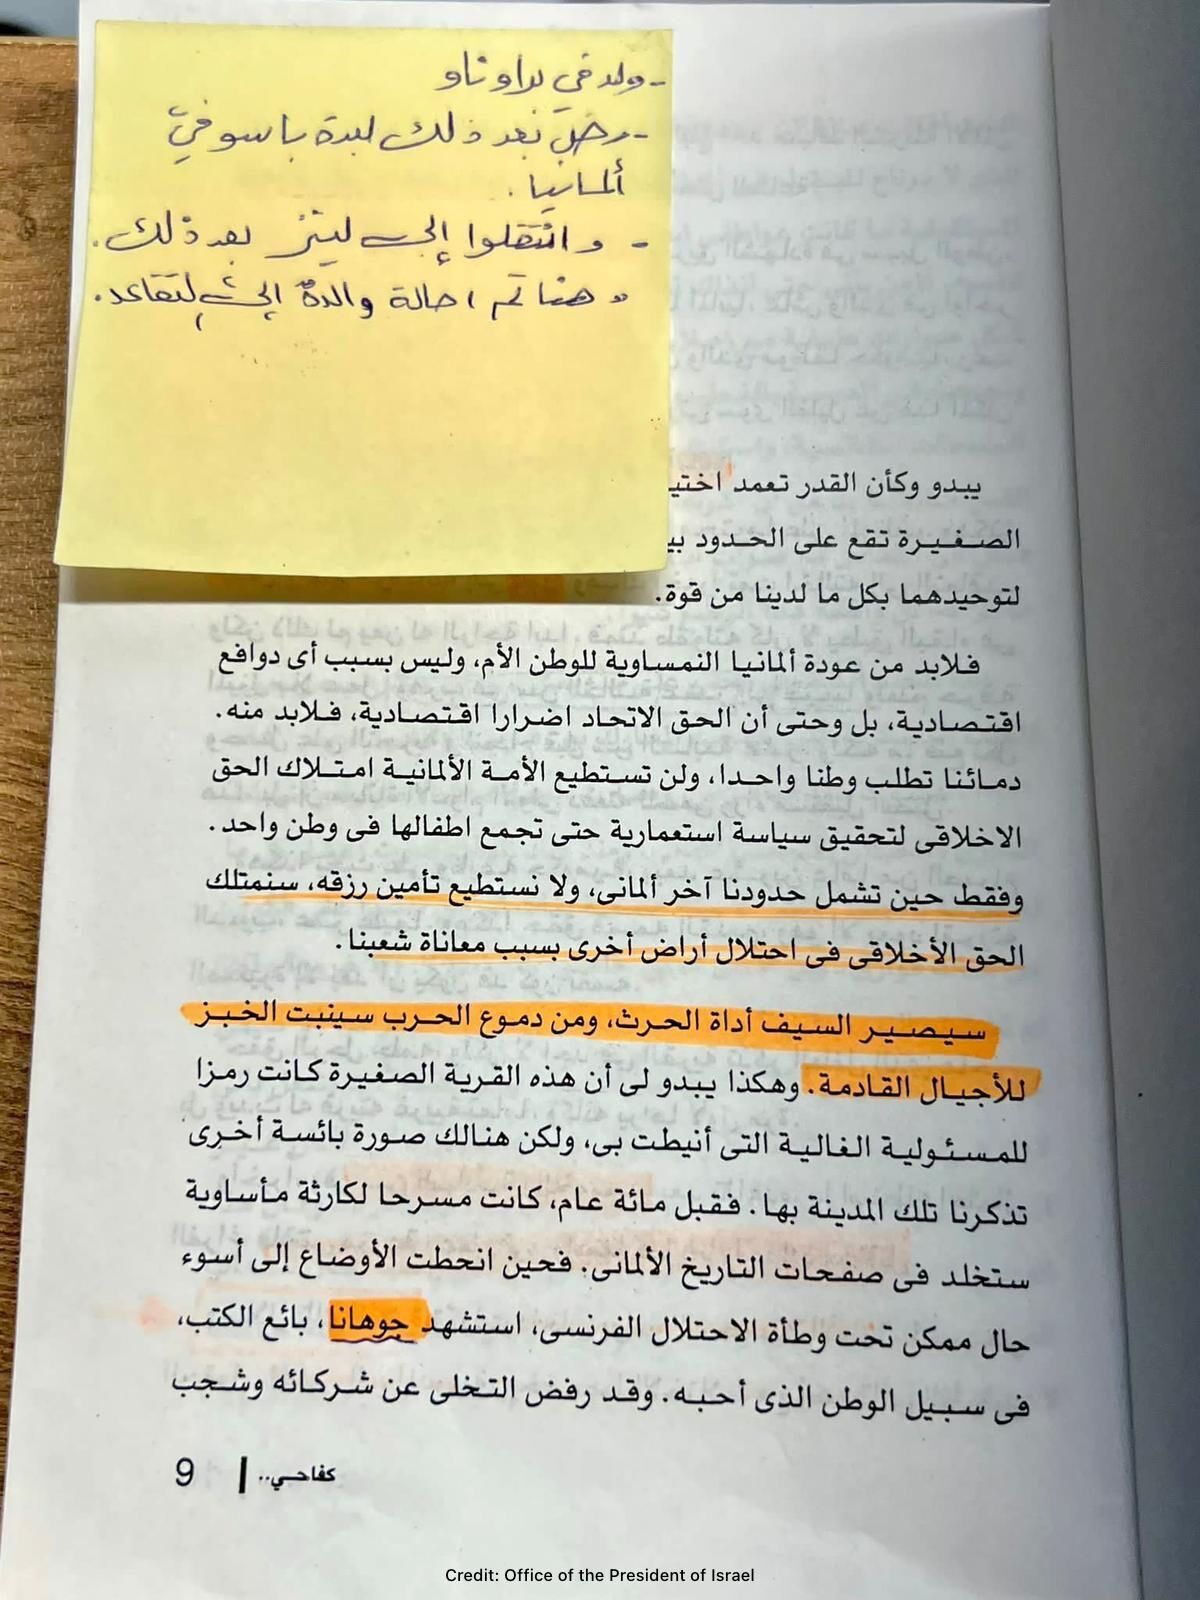 На базі ХАМАС у Газі знайшли арабський переклад "Майн Кампф" Гітлера. Фото